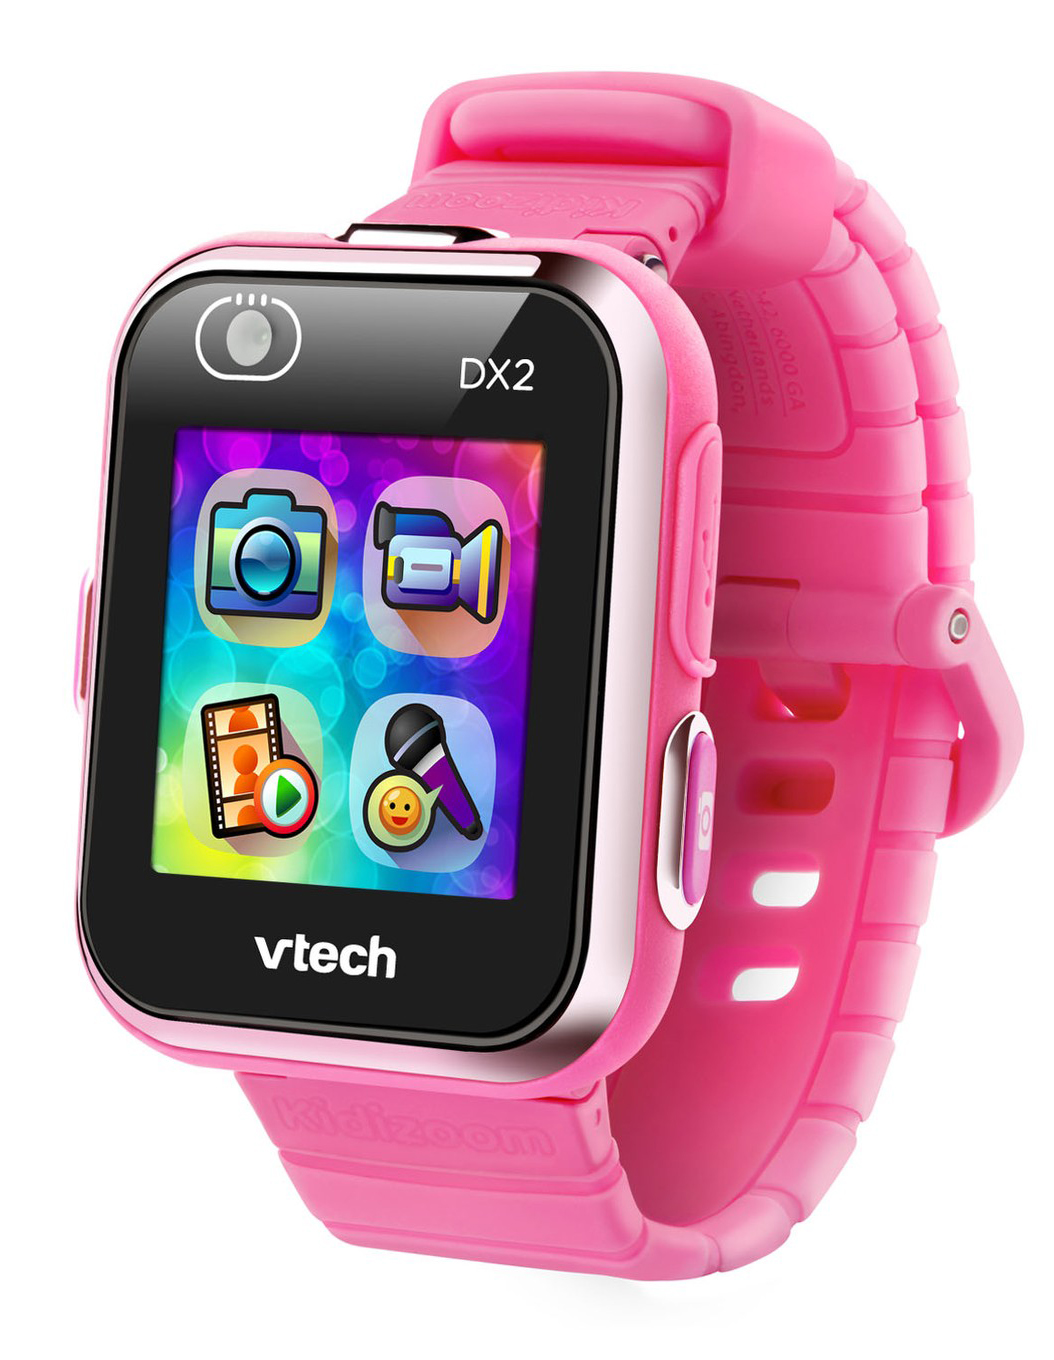 VTech Kidizoom Smartwatch DX2.0 Pink